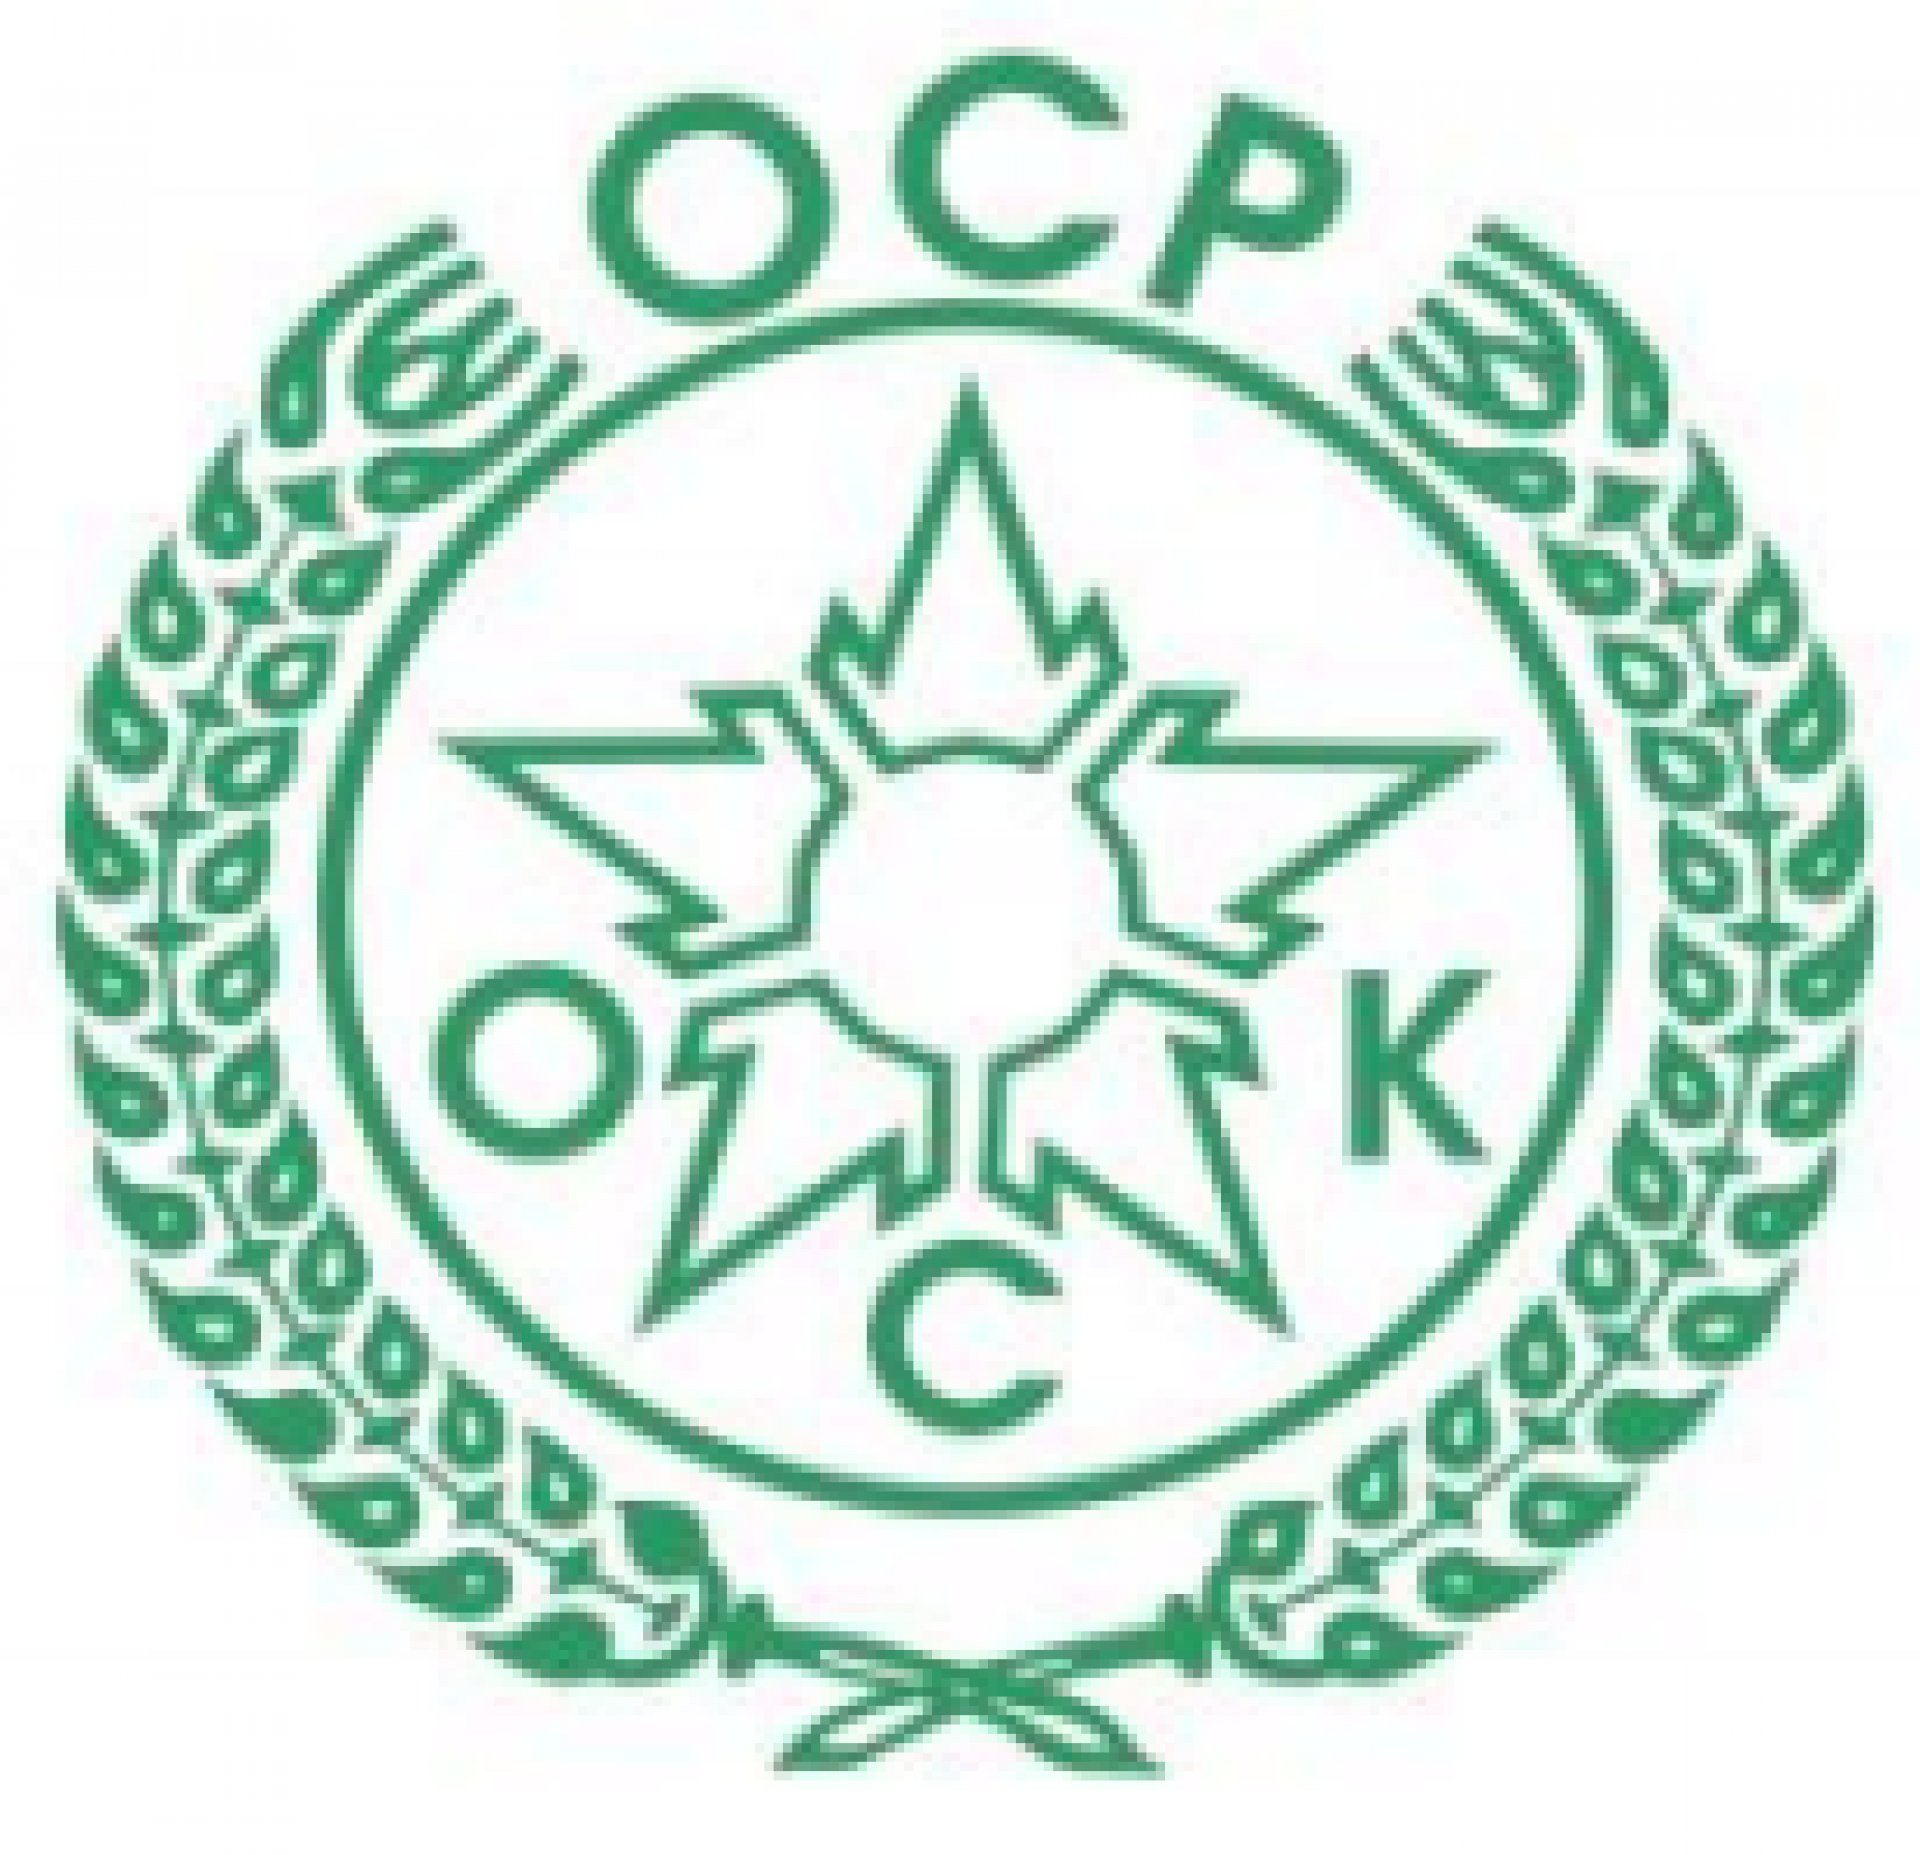 Olympique Club de Khouribga (OCK) logo